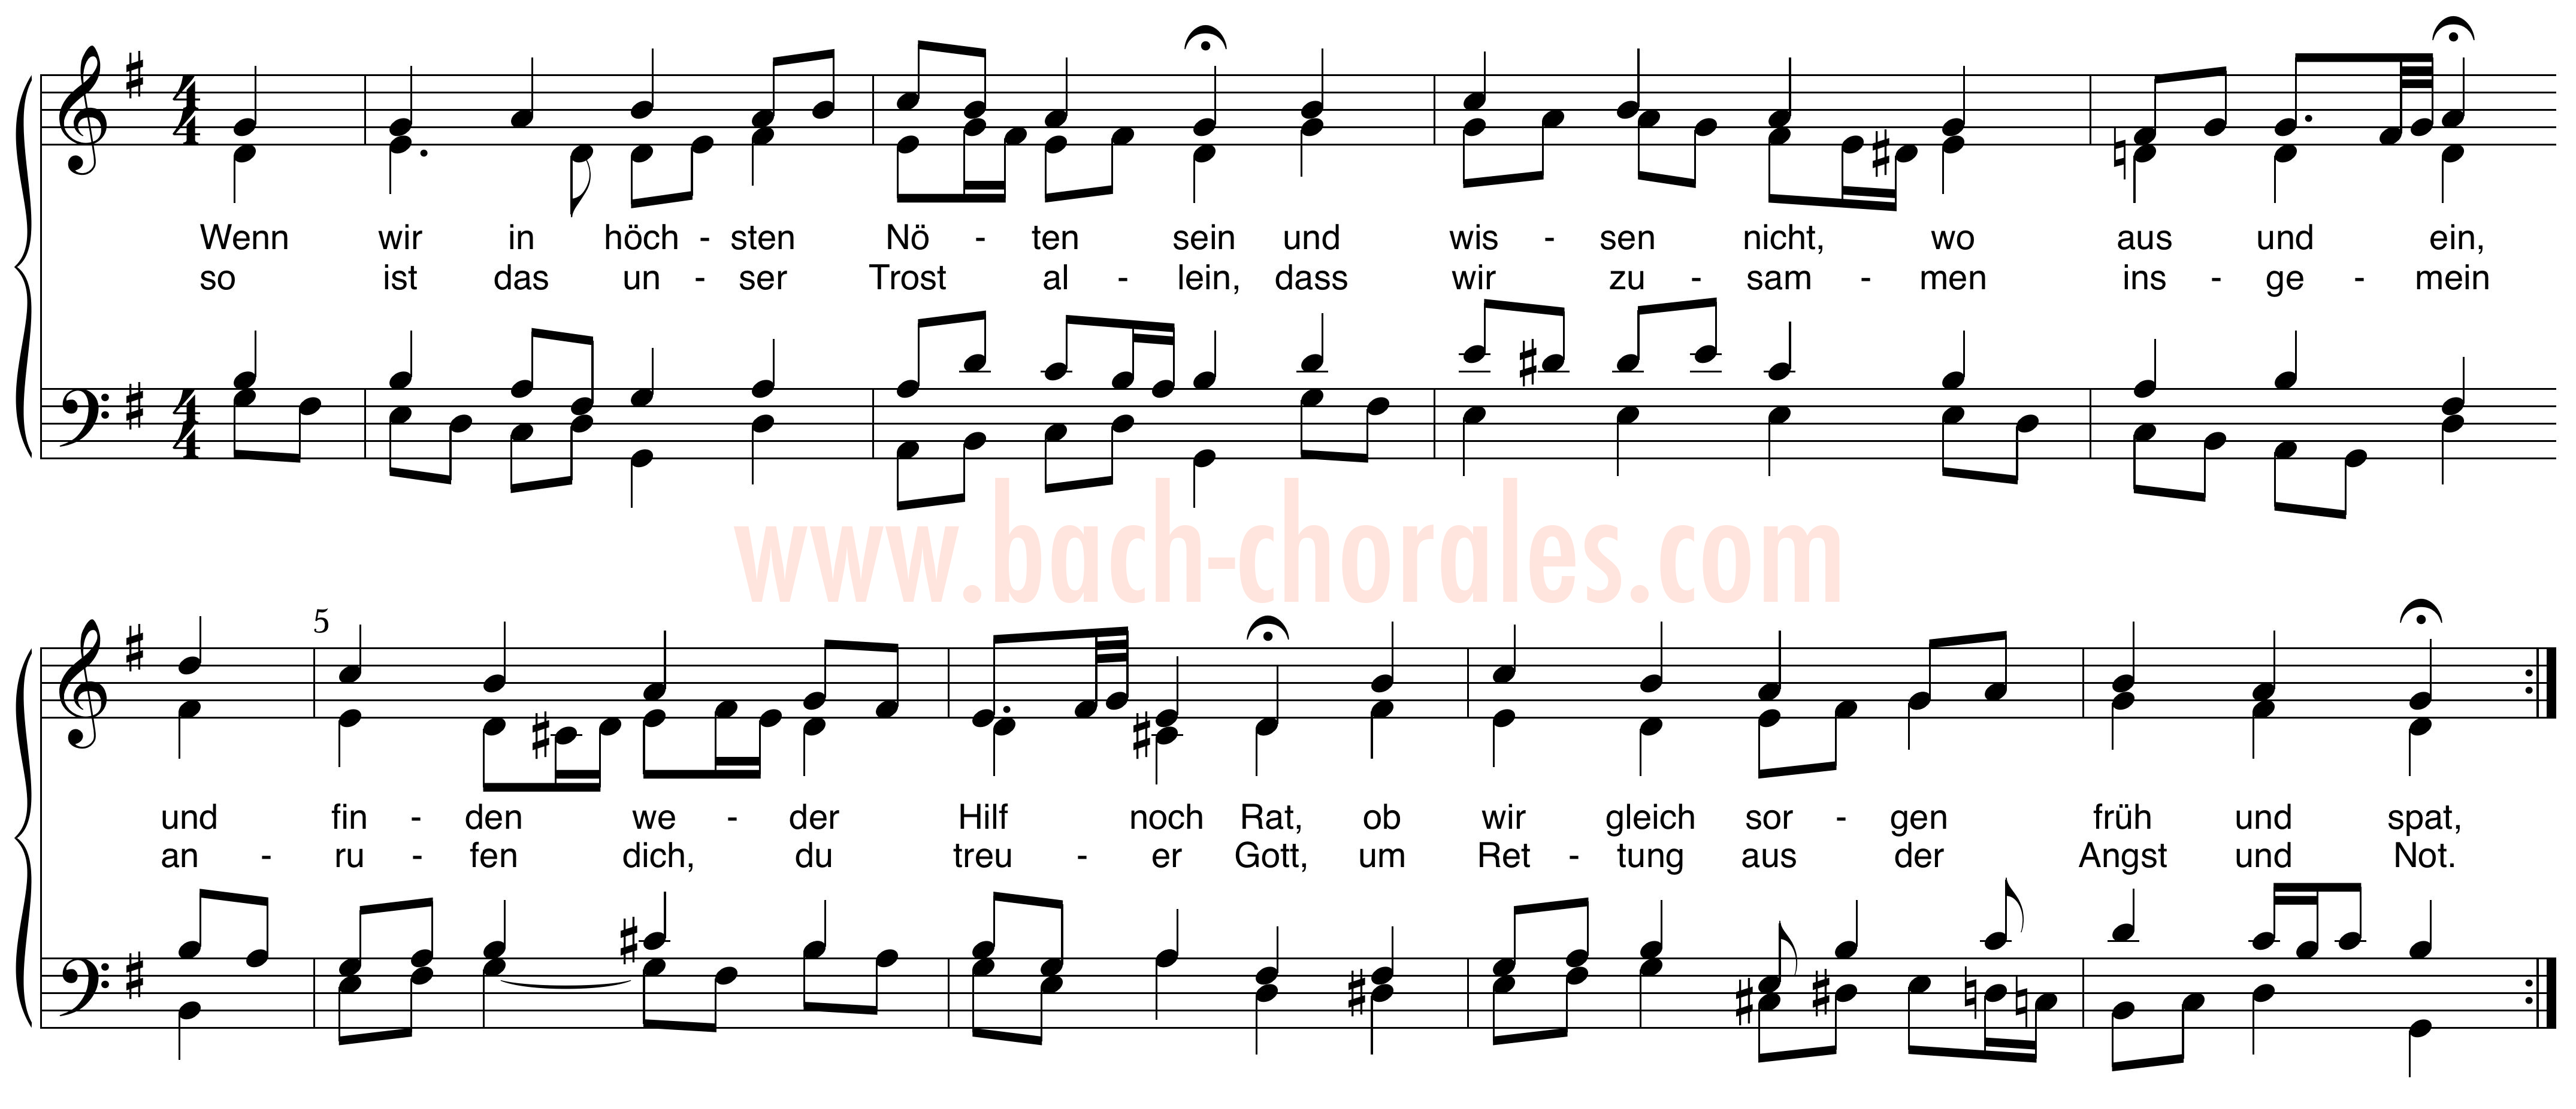 notenbeeld BWV 432 op https://www.bach-chorales.com/